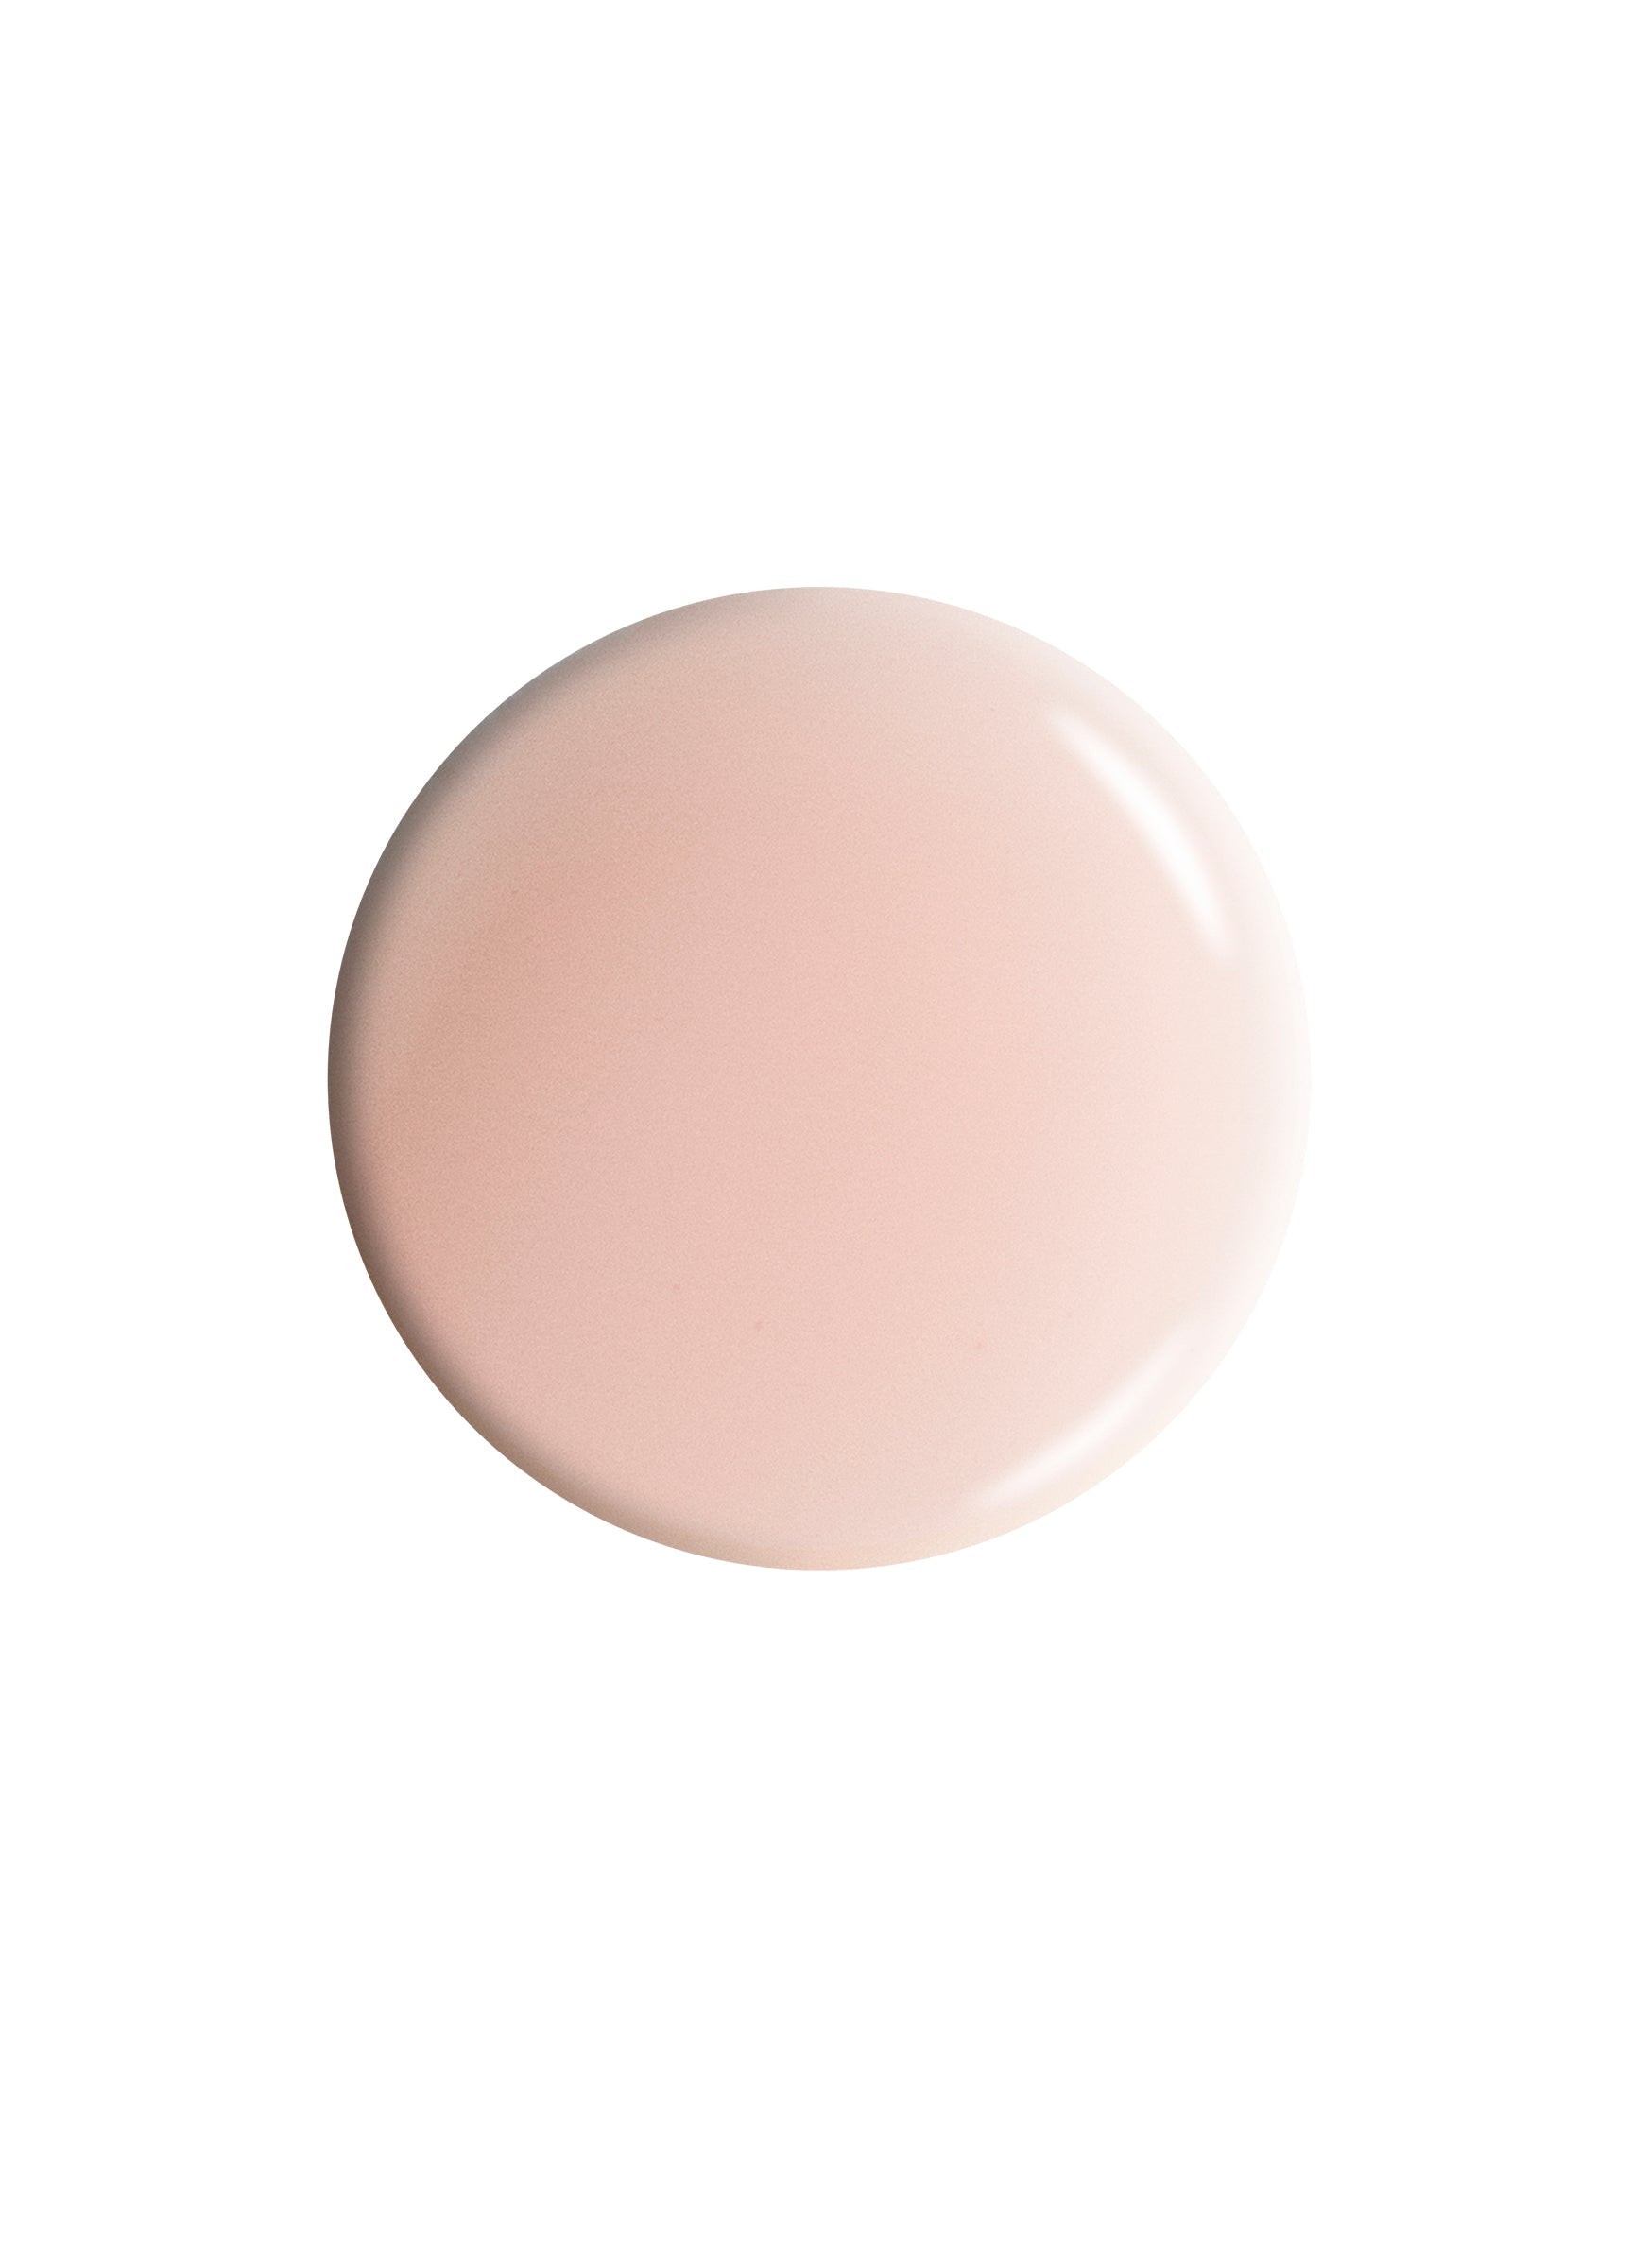 Dr.'s REMEDY Enriched Nail Polish / PERFECT Petal Pink (sheer) 15ml